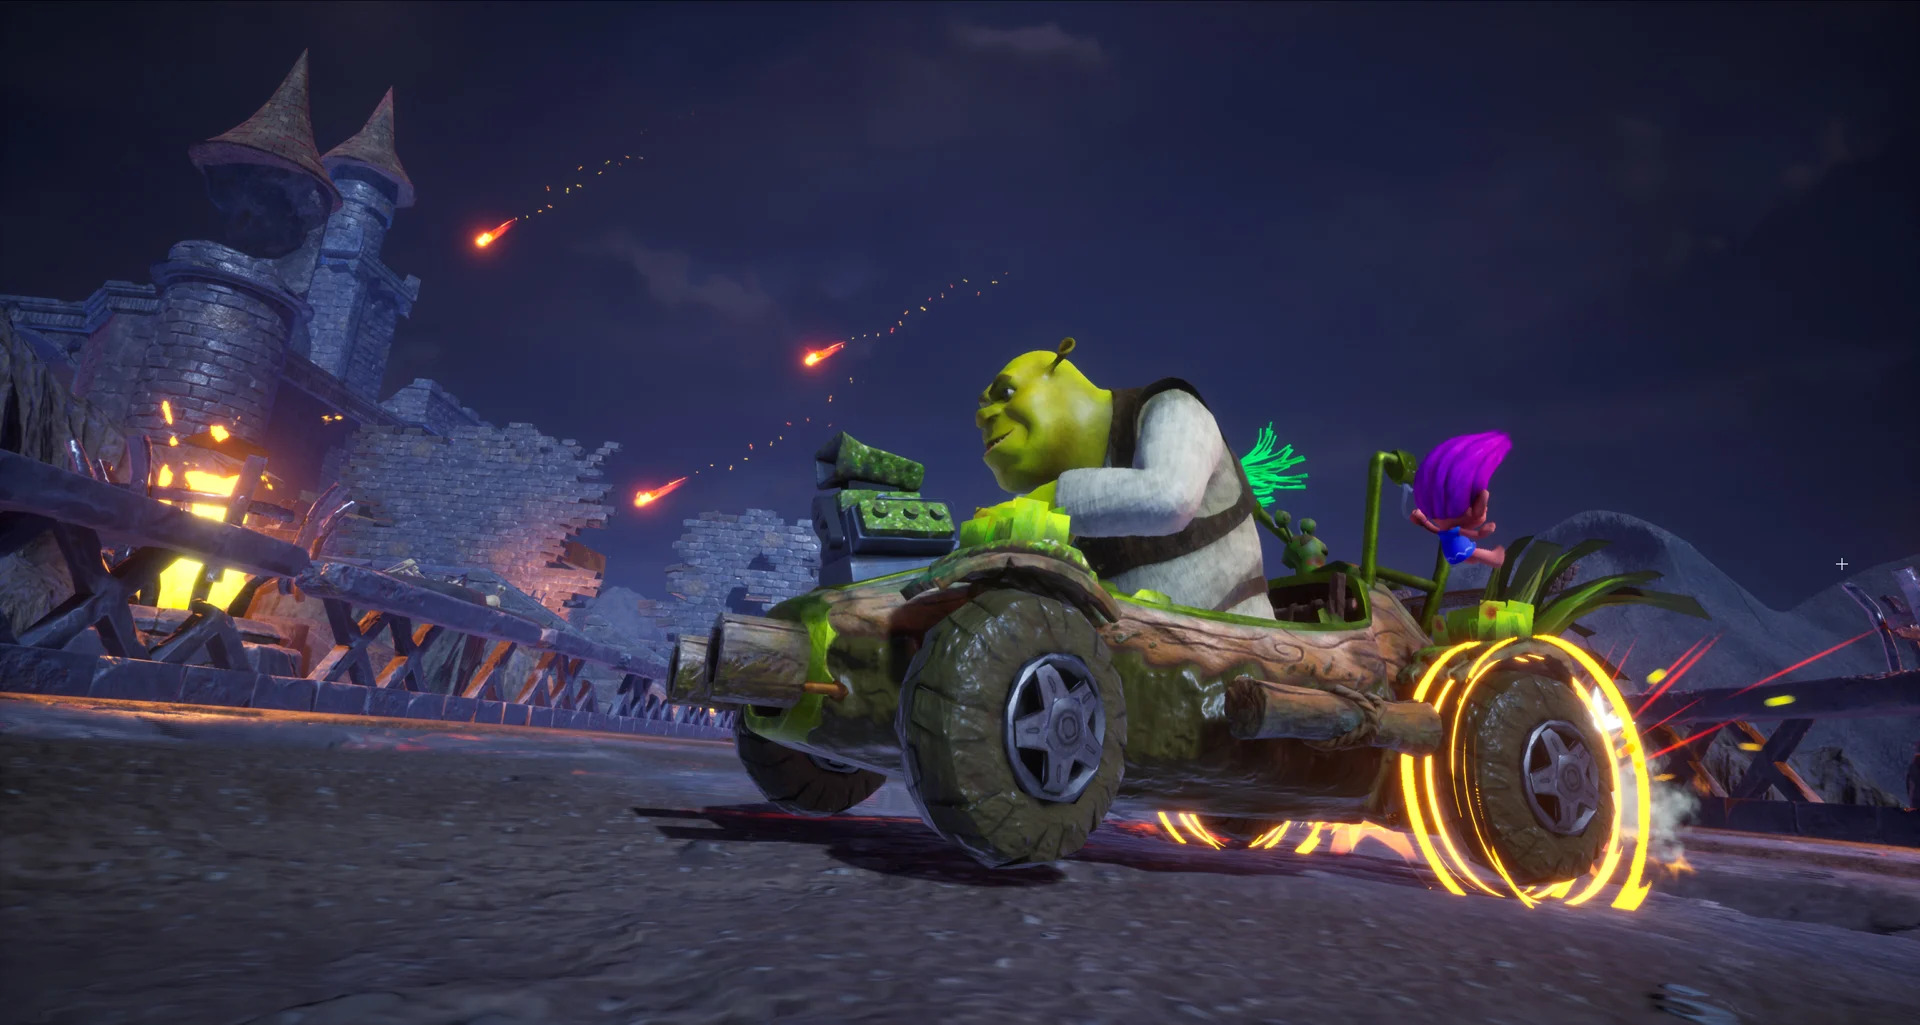 All-Star Kart Racing ─ аркадний симулятор перегонів зі Шреком, Віслюком, Котом у чоботях та іншими героями мультфільмів DreamWorks